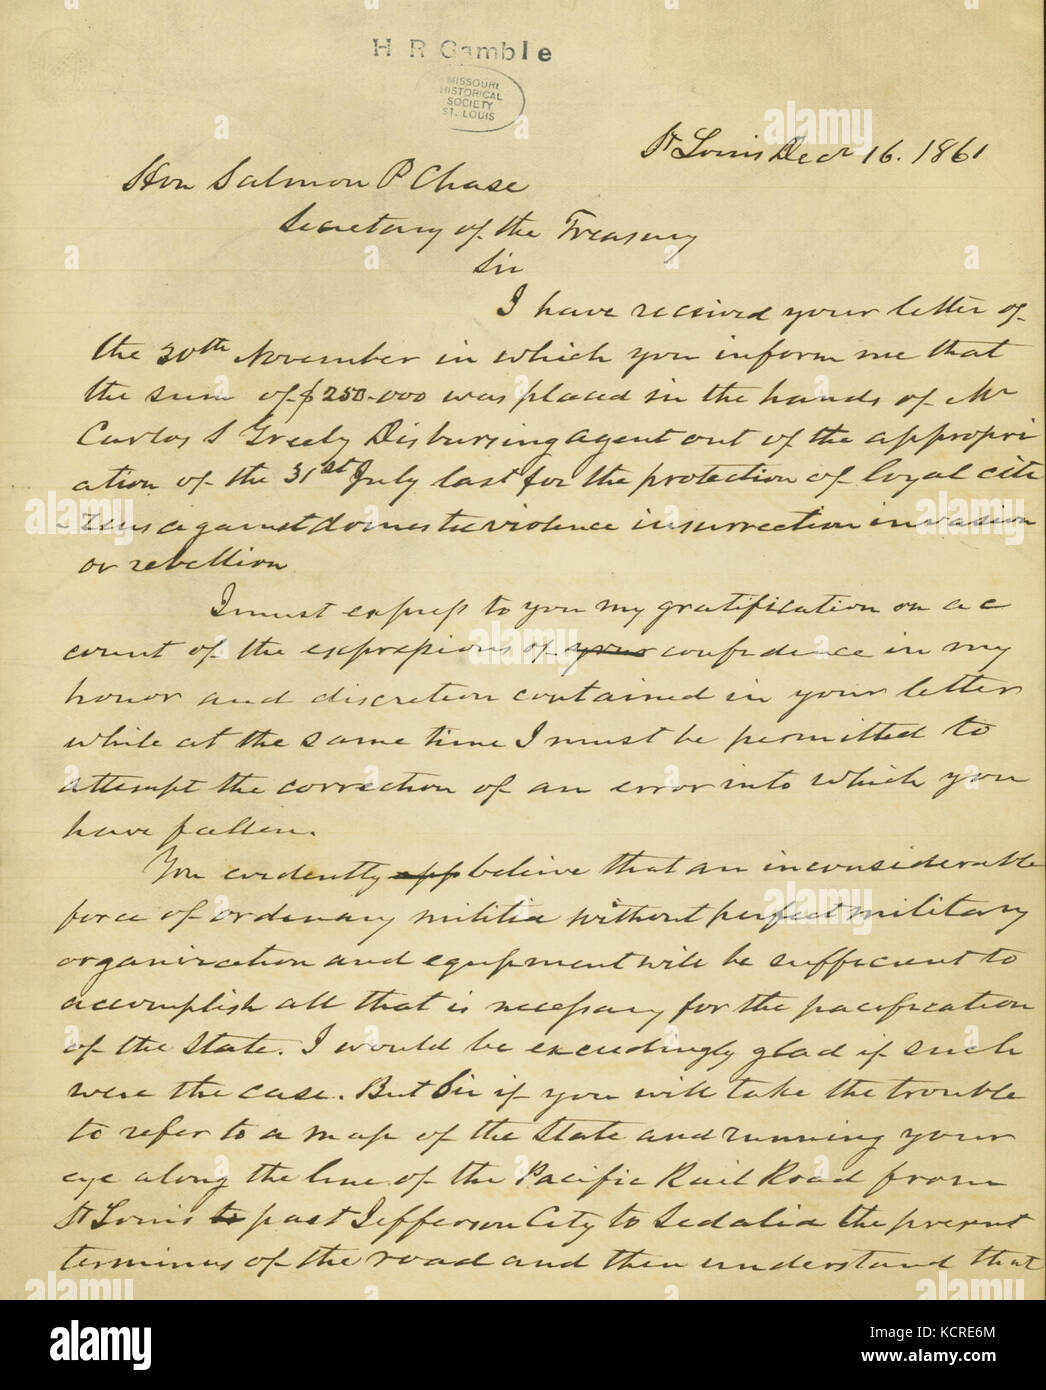 Brouillon de lettre de Hamilton R. Gamble, Saint Louis, à l'honorable Salmon P. Chase, secrétaire du Trésor, le 16 décembre 1861 Banque D'Images